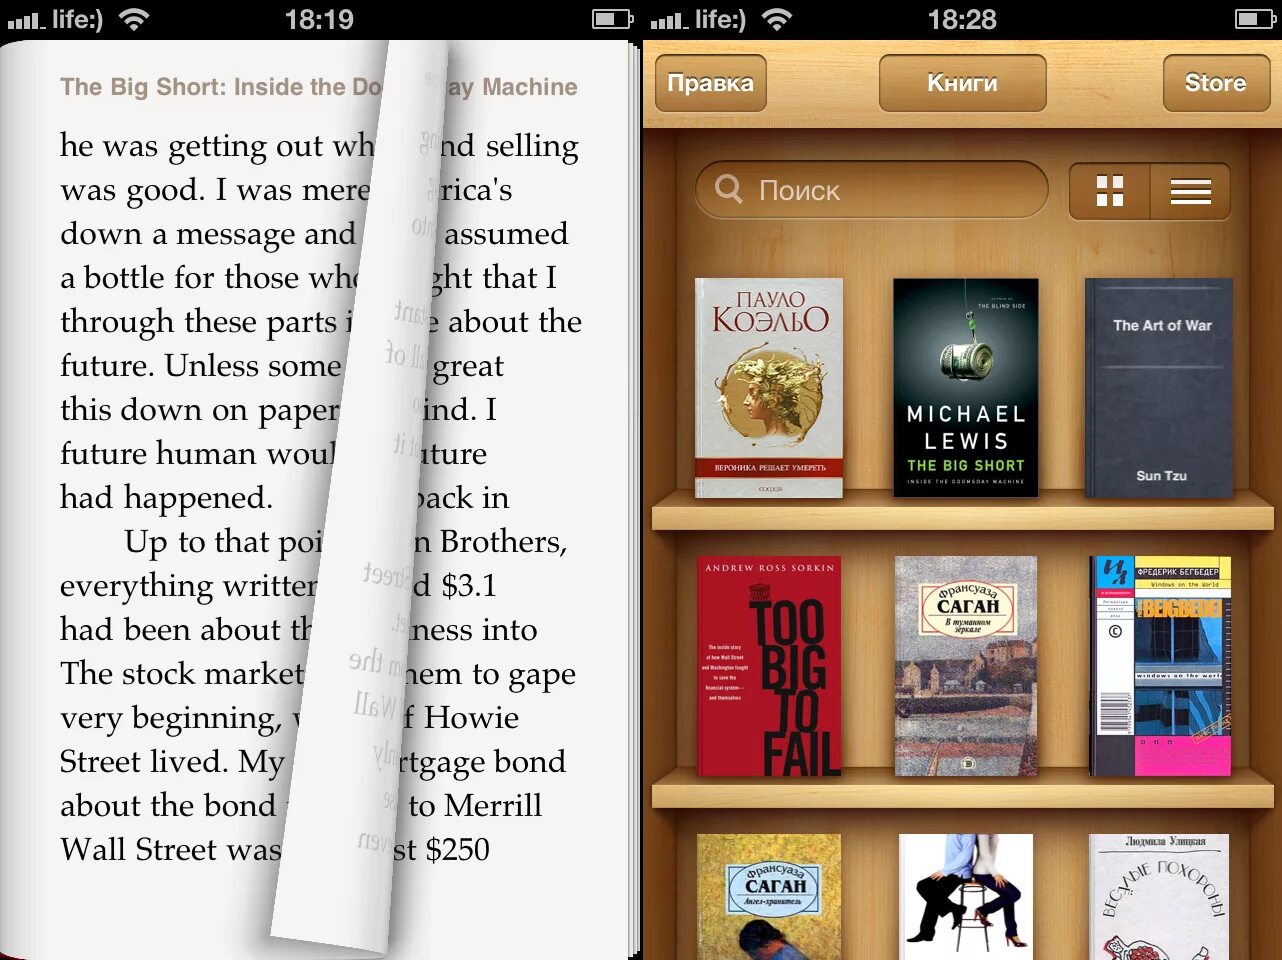 Читалка открыть. Приложение для чтения книг. Приложение для чмтания книг. Электронная книга приложение. Хорошее приложение для чтения книг.